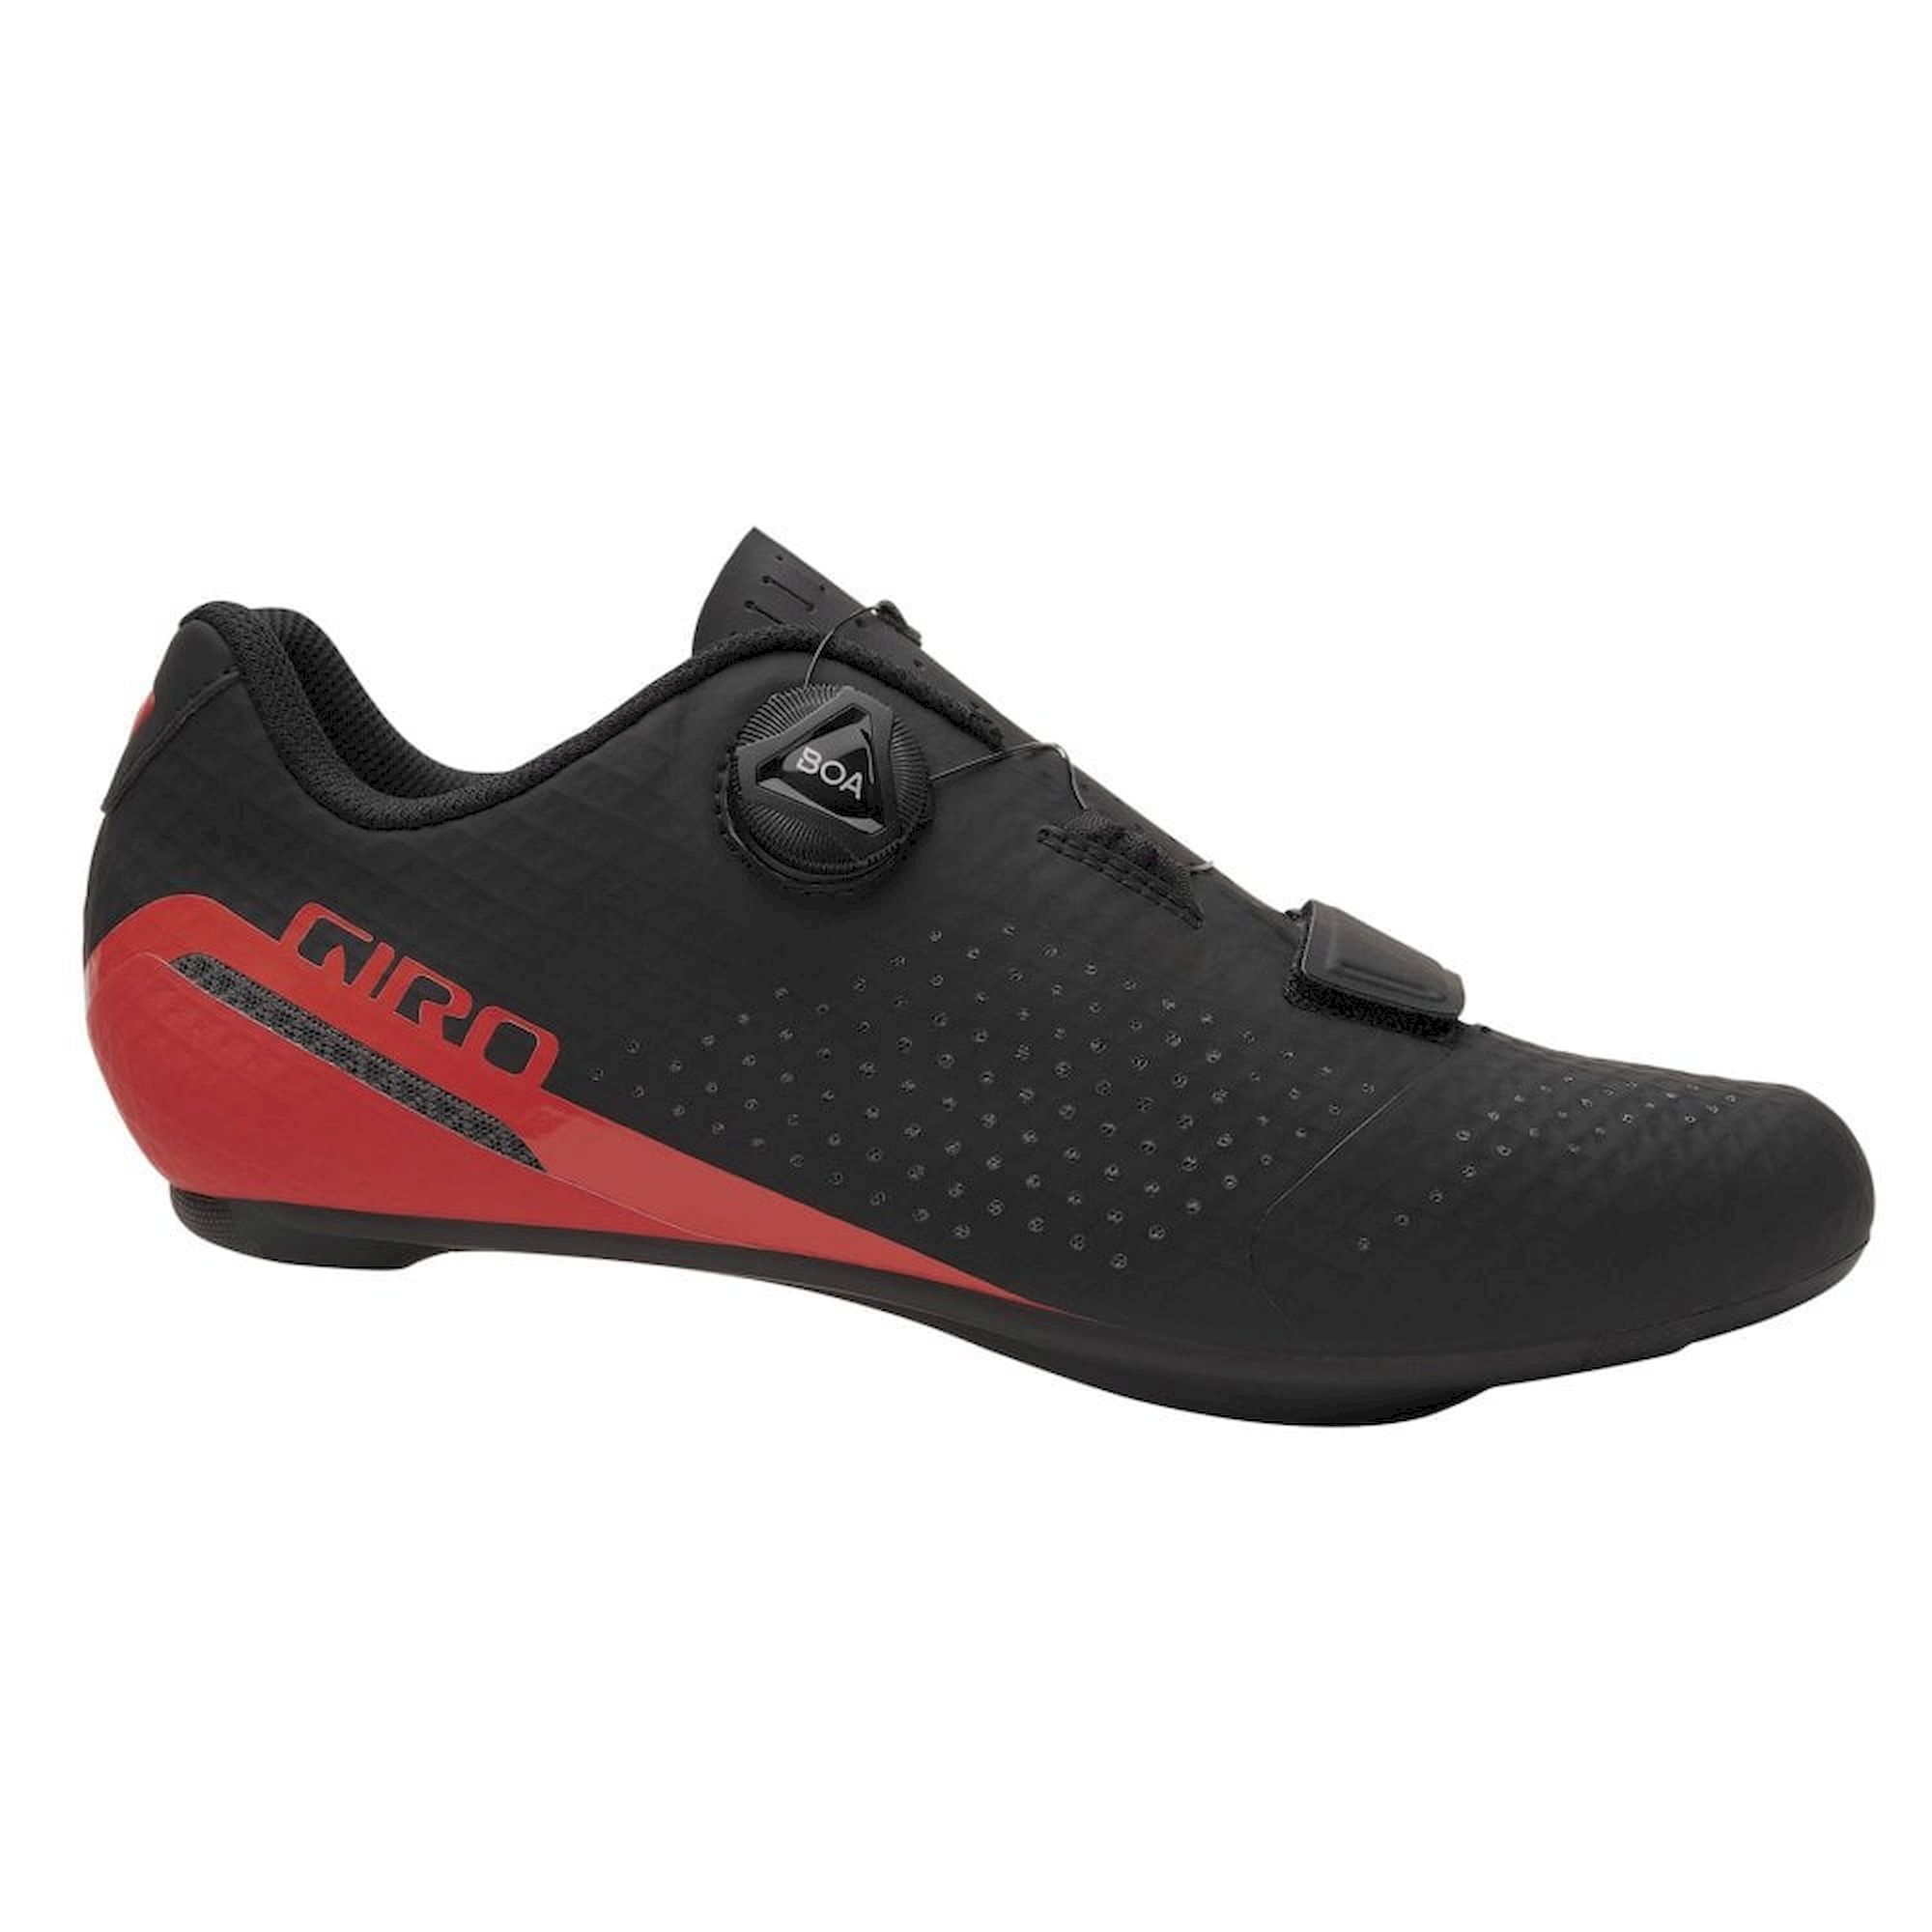 Giro Cadet - Cycling shoes